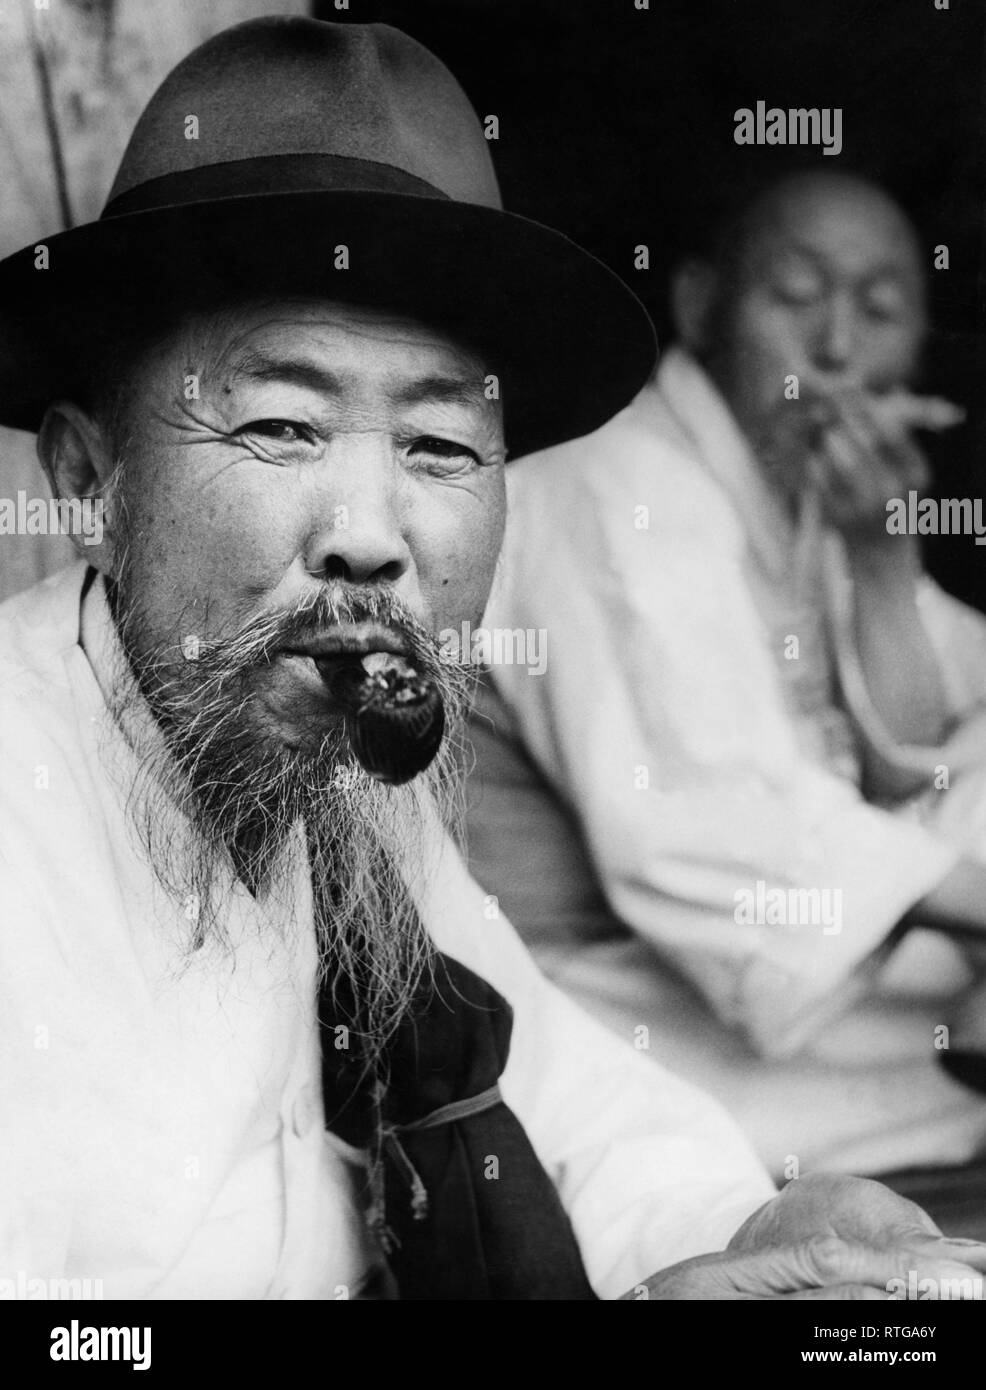 Asie, Corée, portrait d'un harabugijn, 1955 Banque D'Images